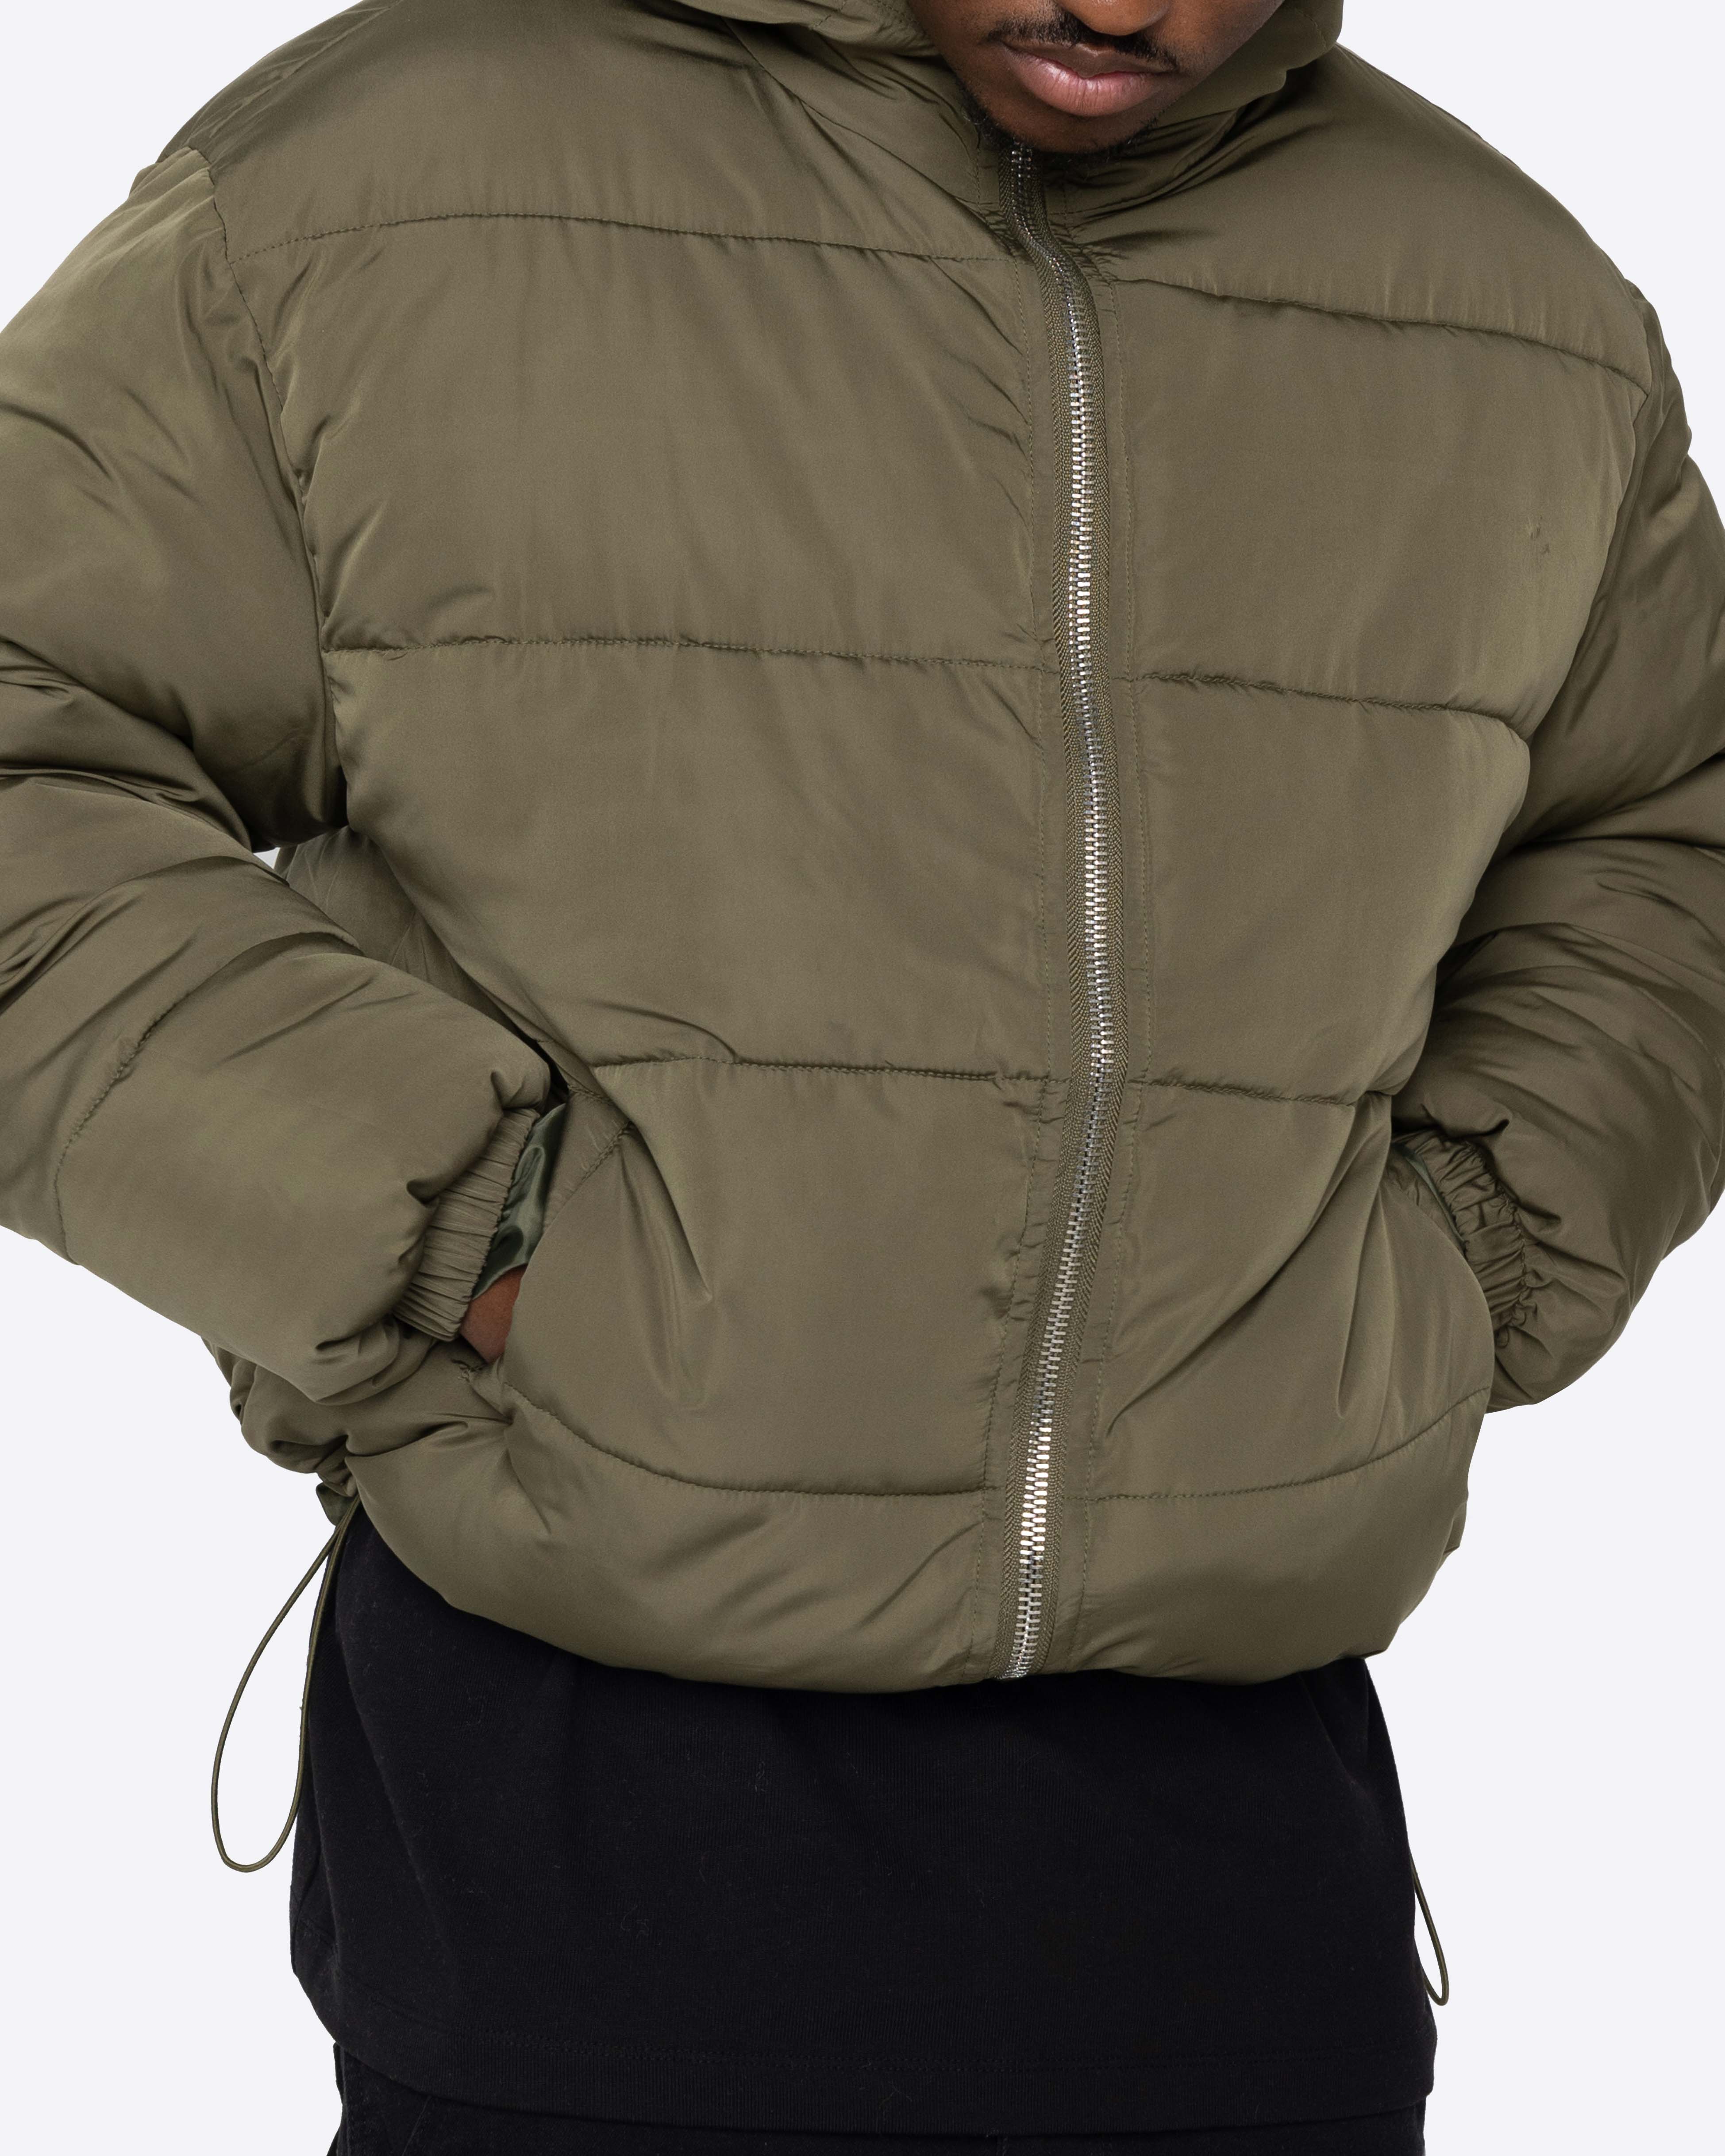 EPTM Alpine Jacket - Olive